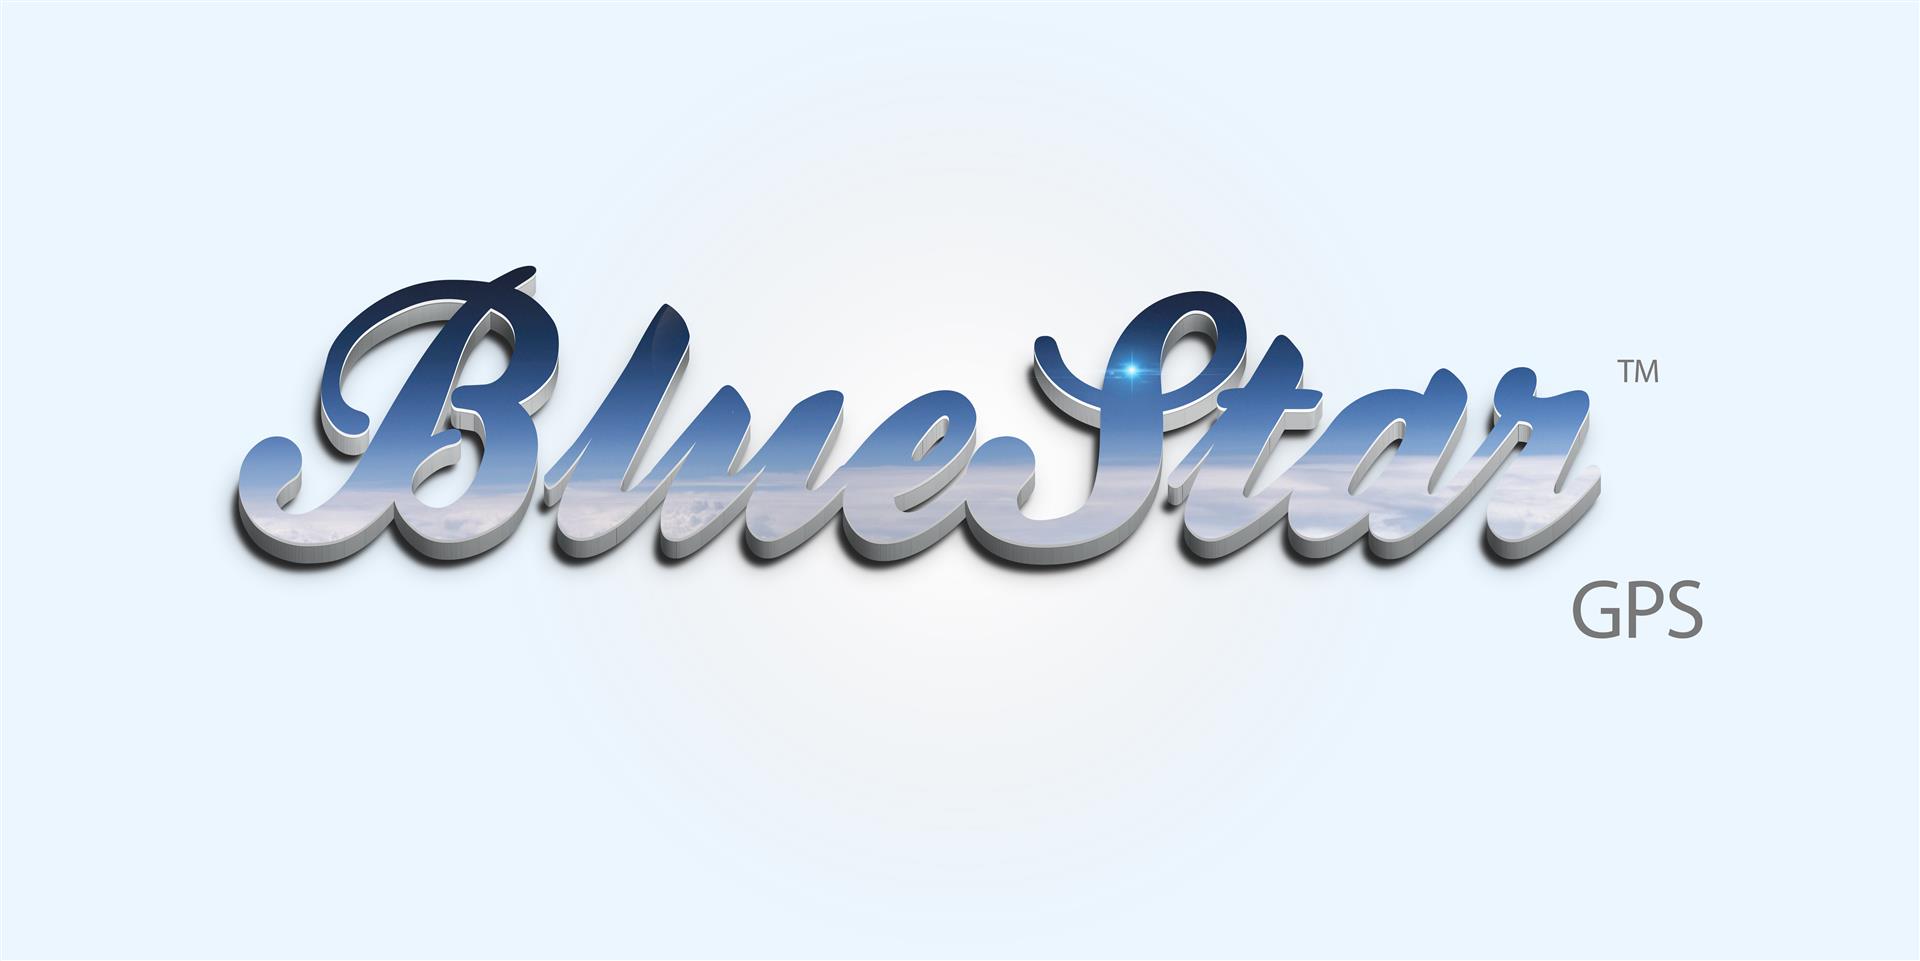 2 bluestar-logotype gnss